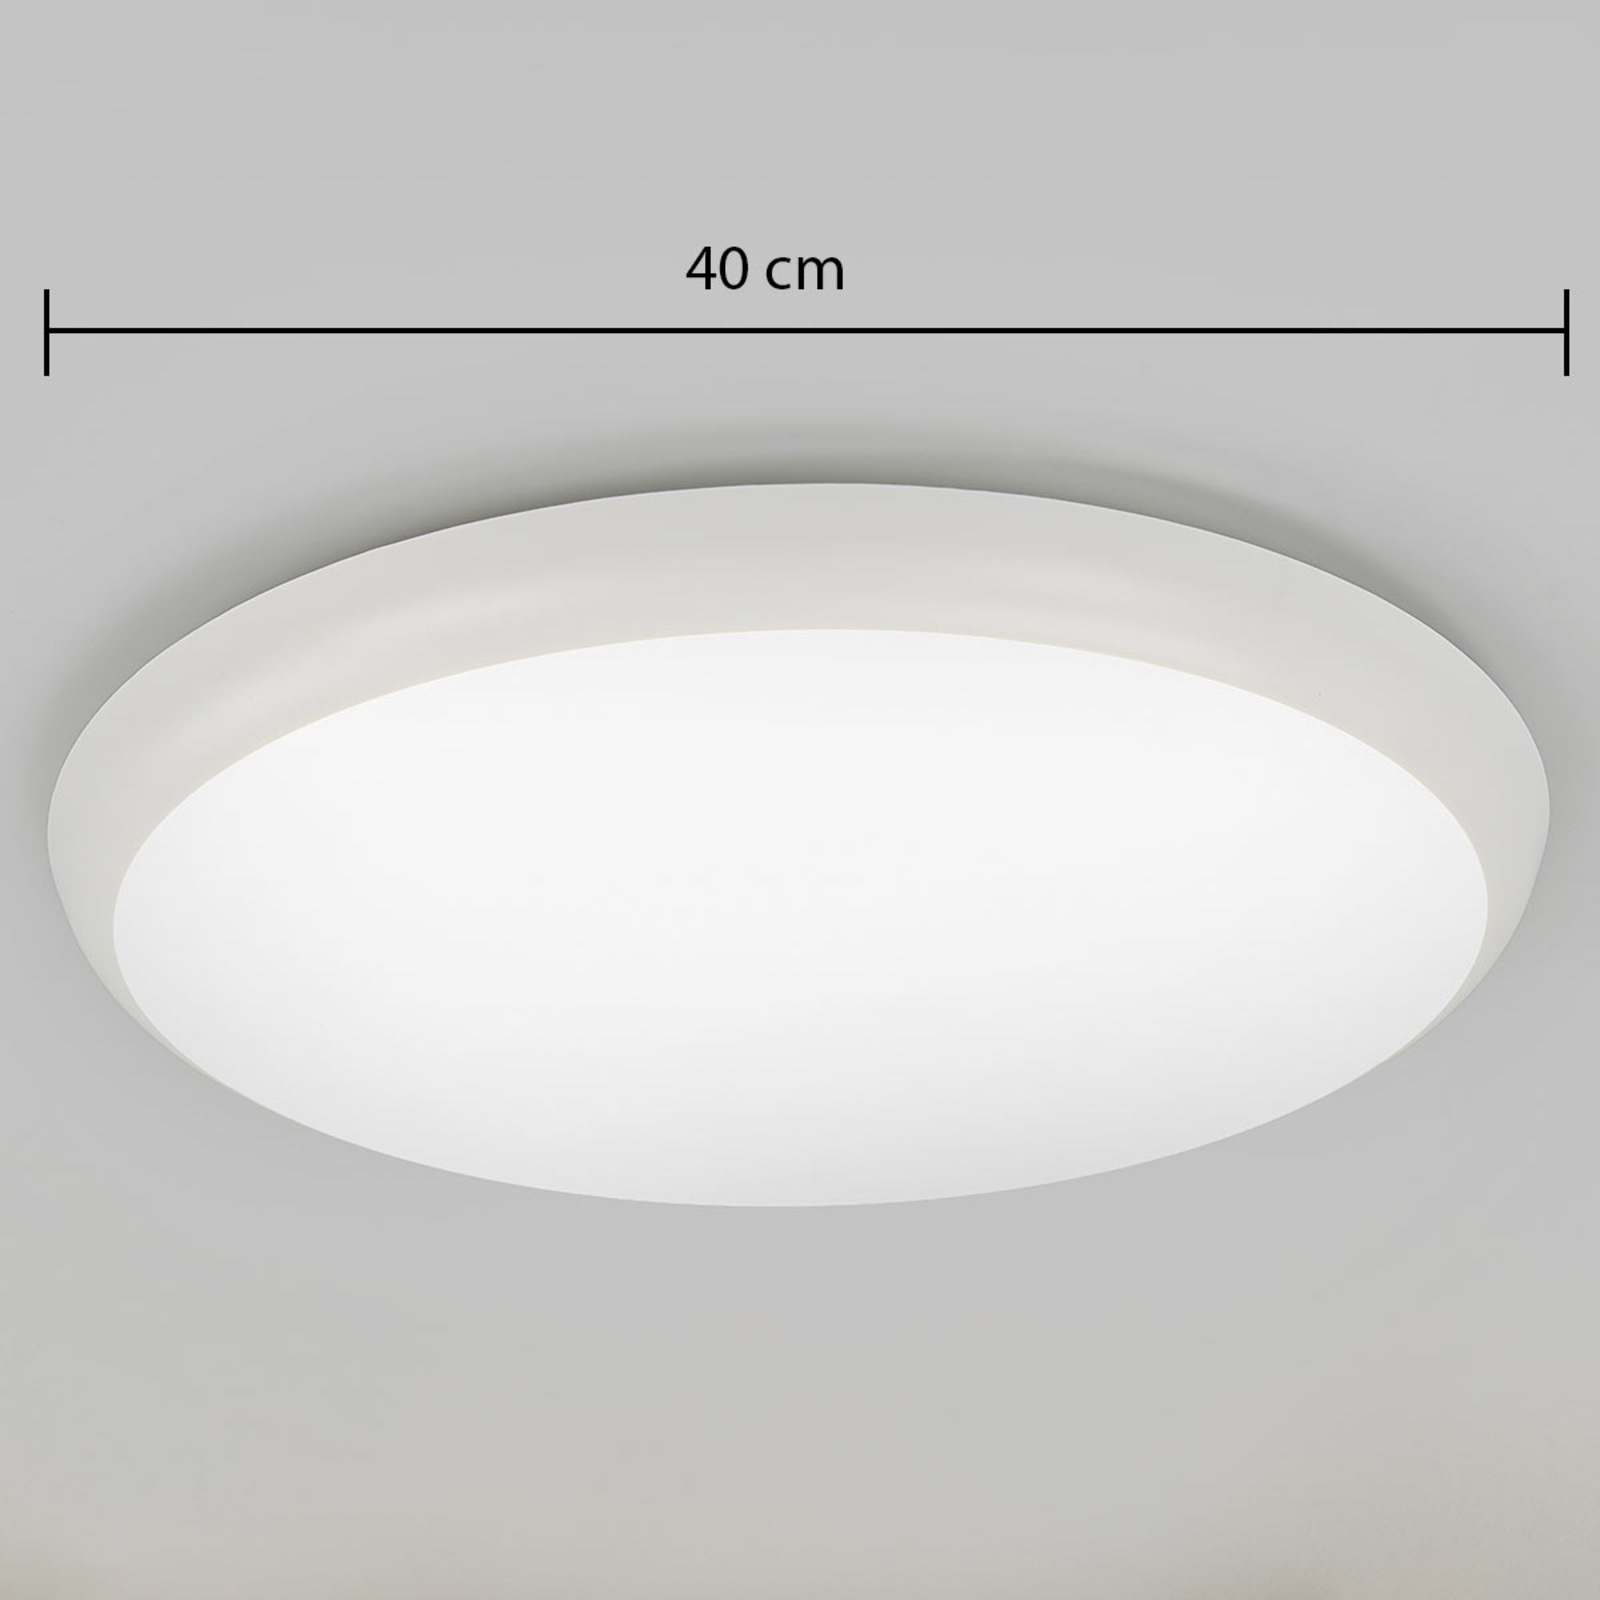 Augustin LED-kattovalaisin, pyöreä, Ø 40 cm